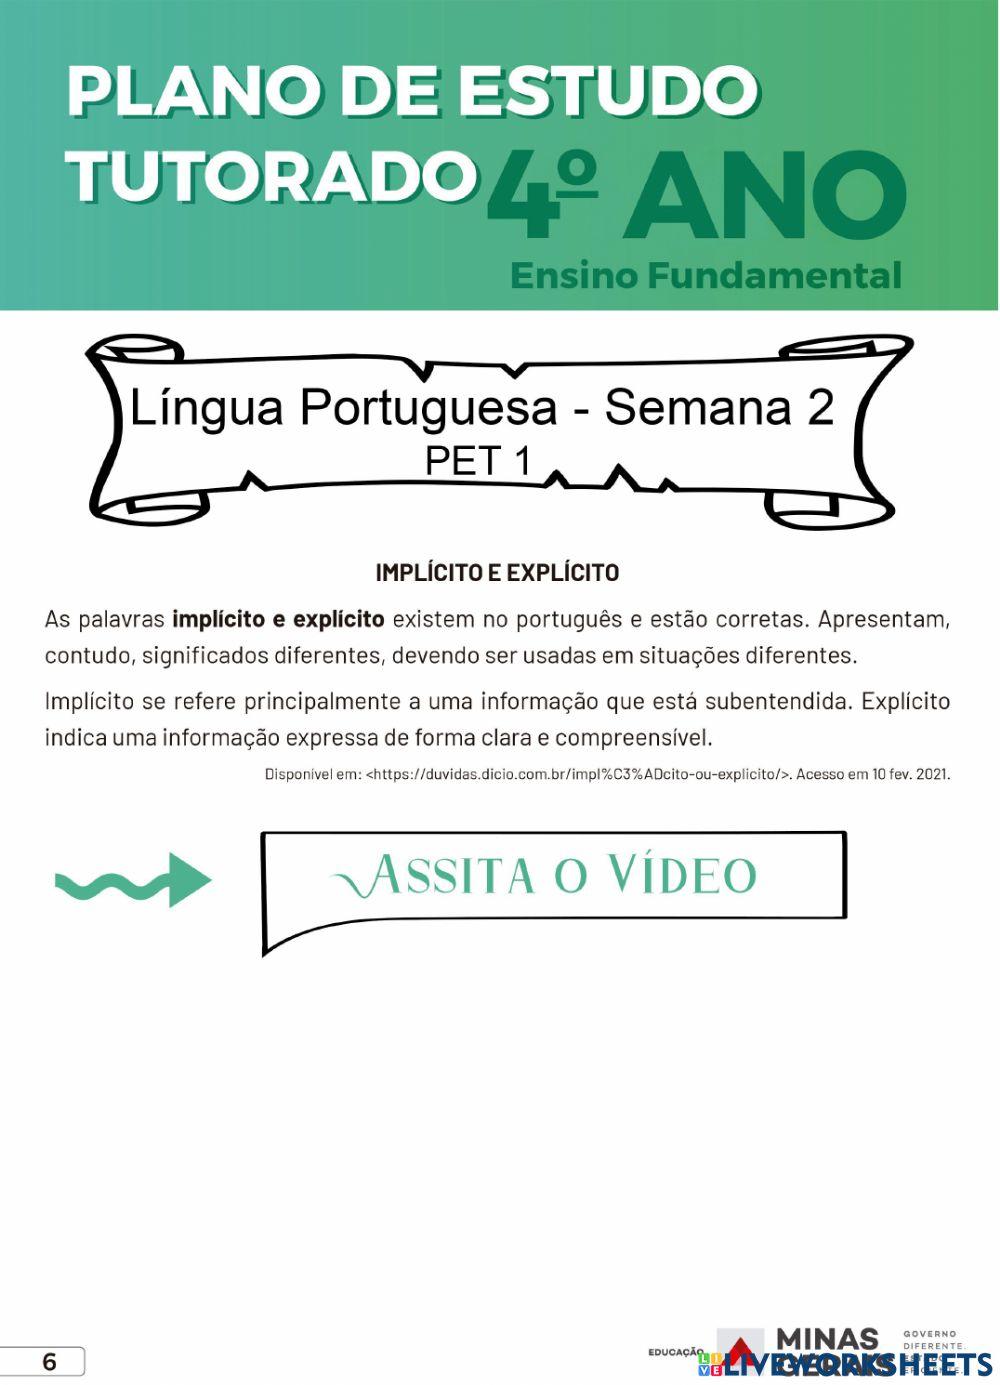 Língua portuguesa - pet 1 - semana 2